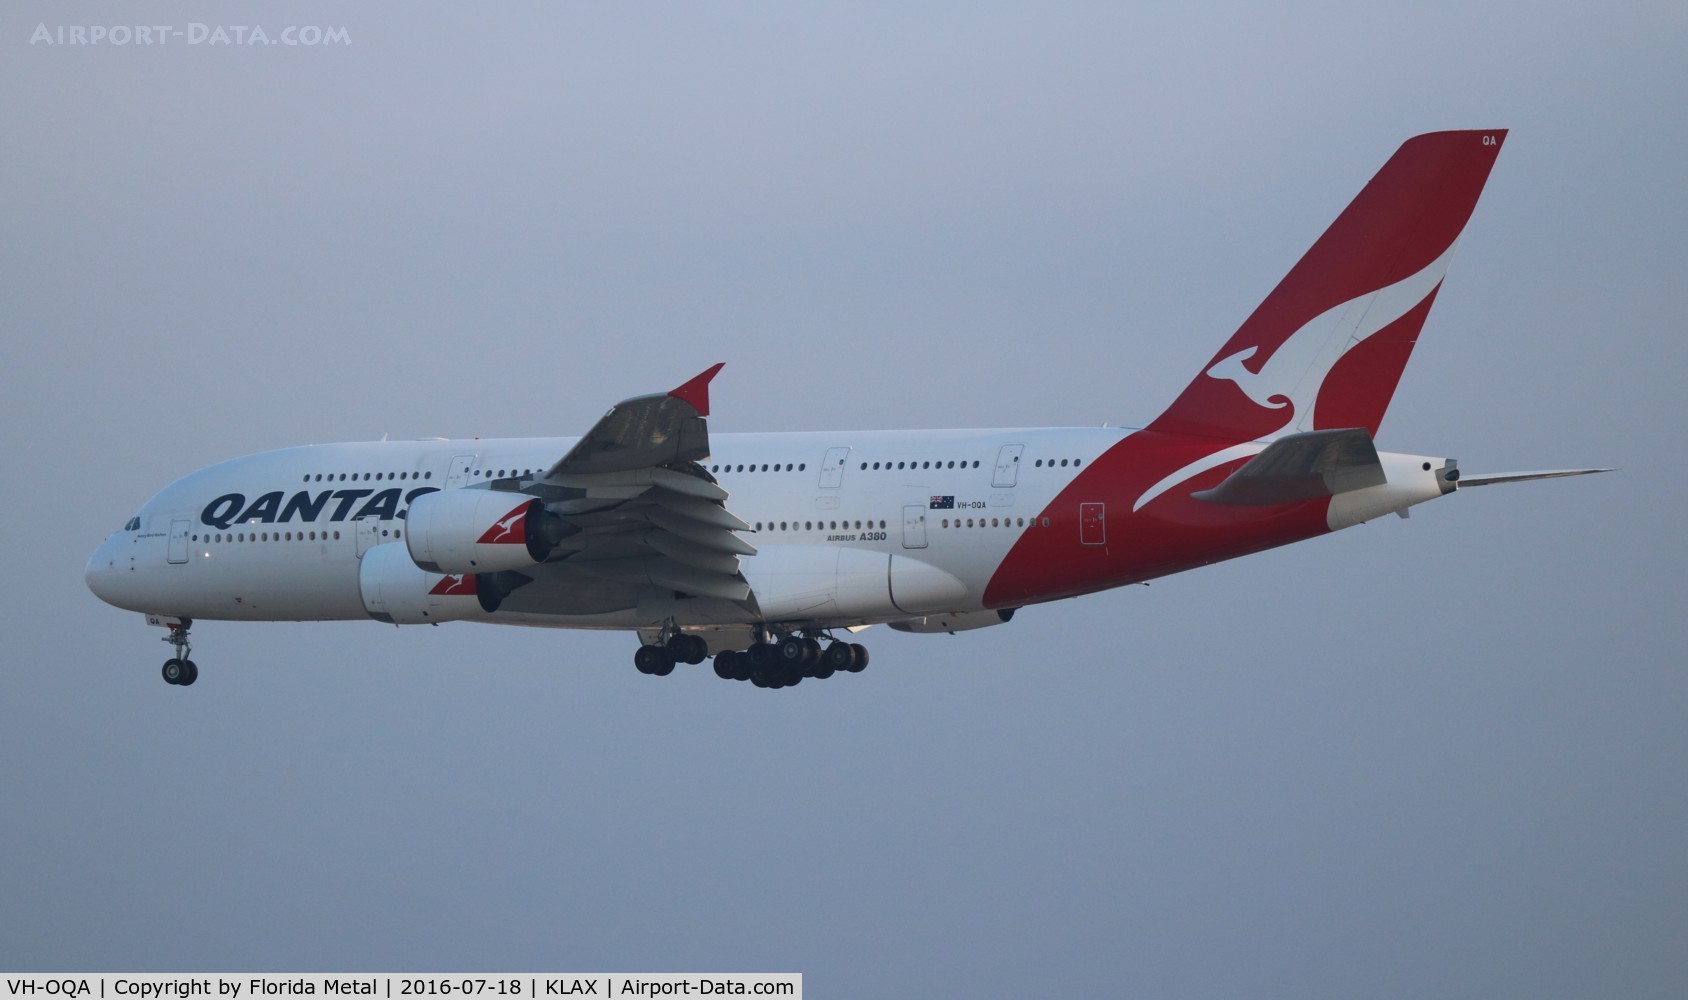 VH-OQA, 2008 Airbus A380-842 C/N 014, Qantas A380